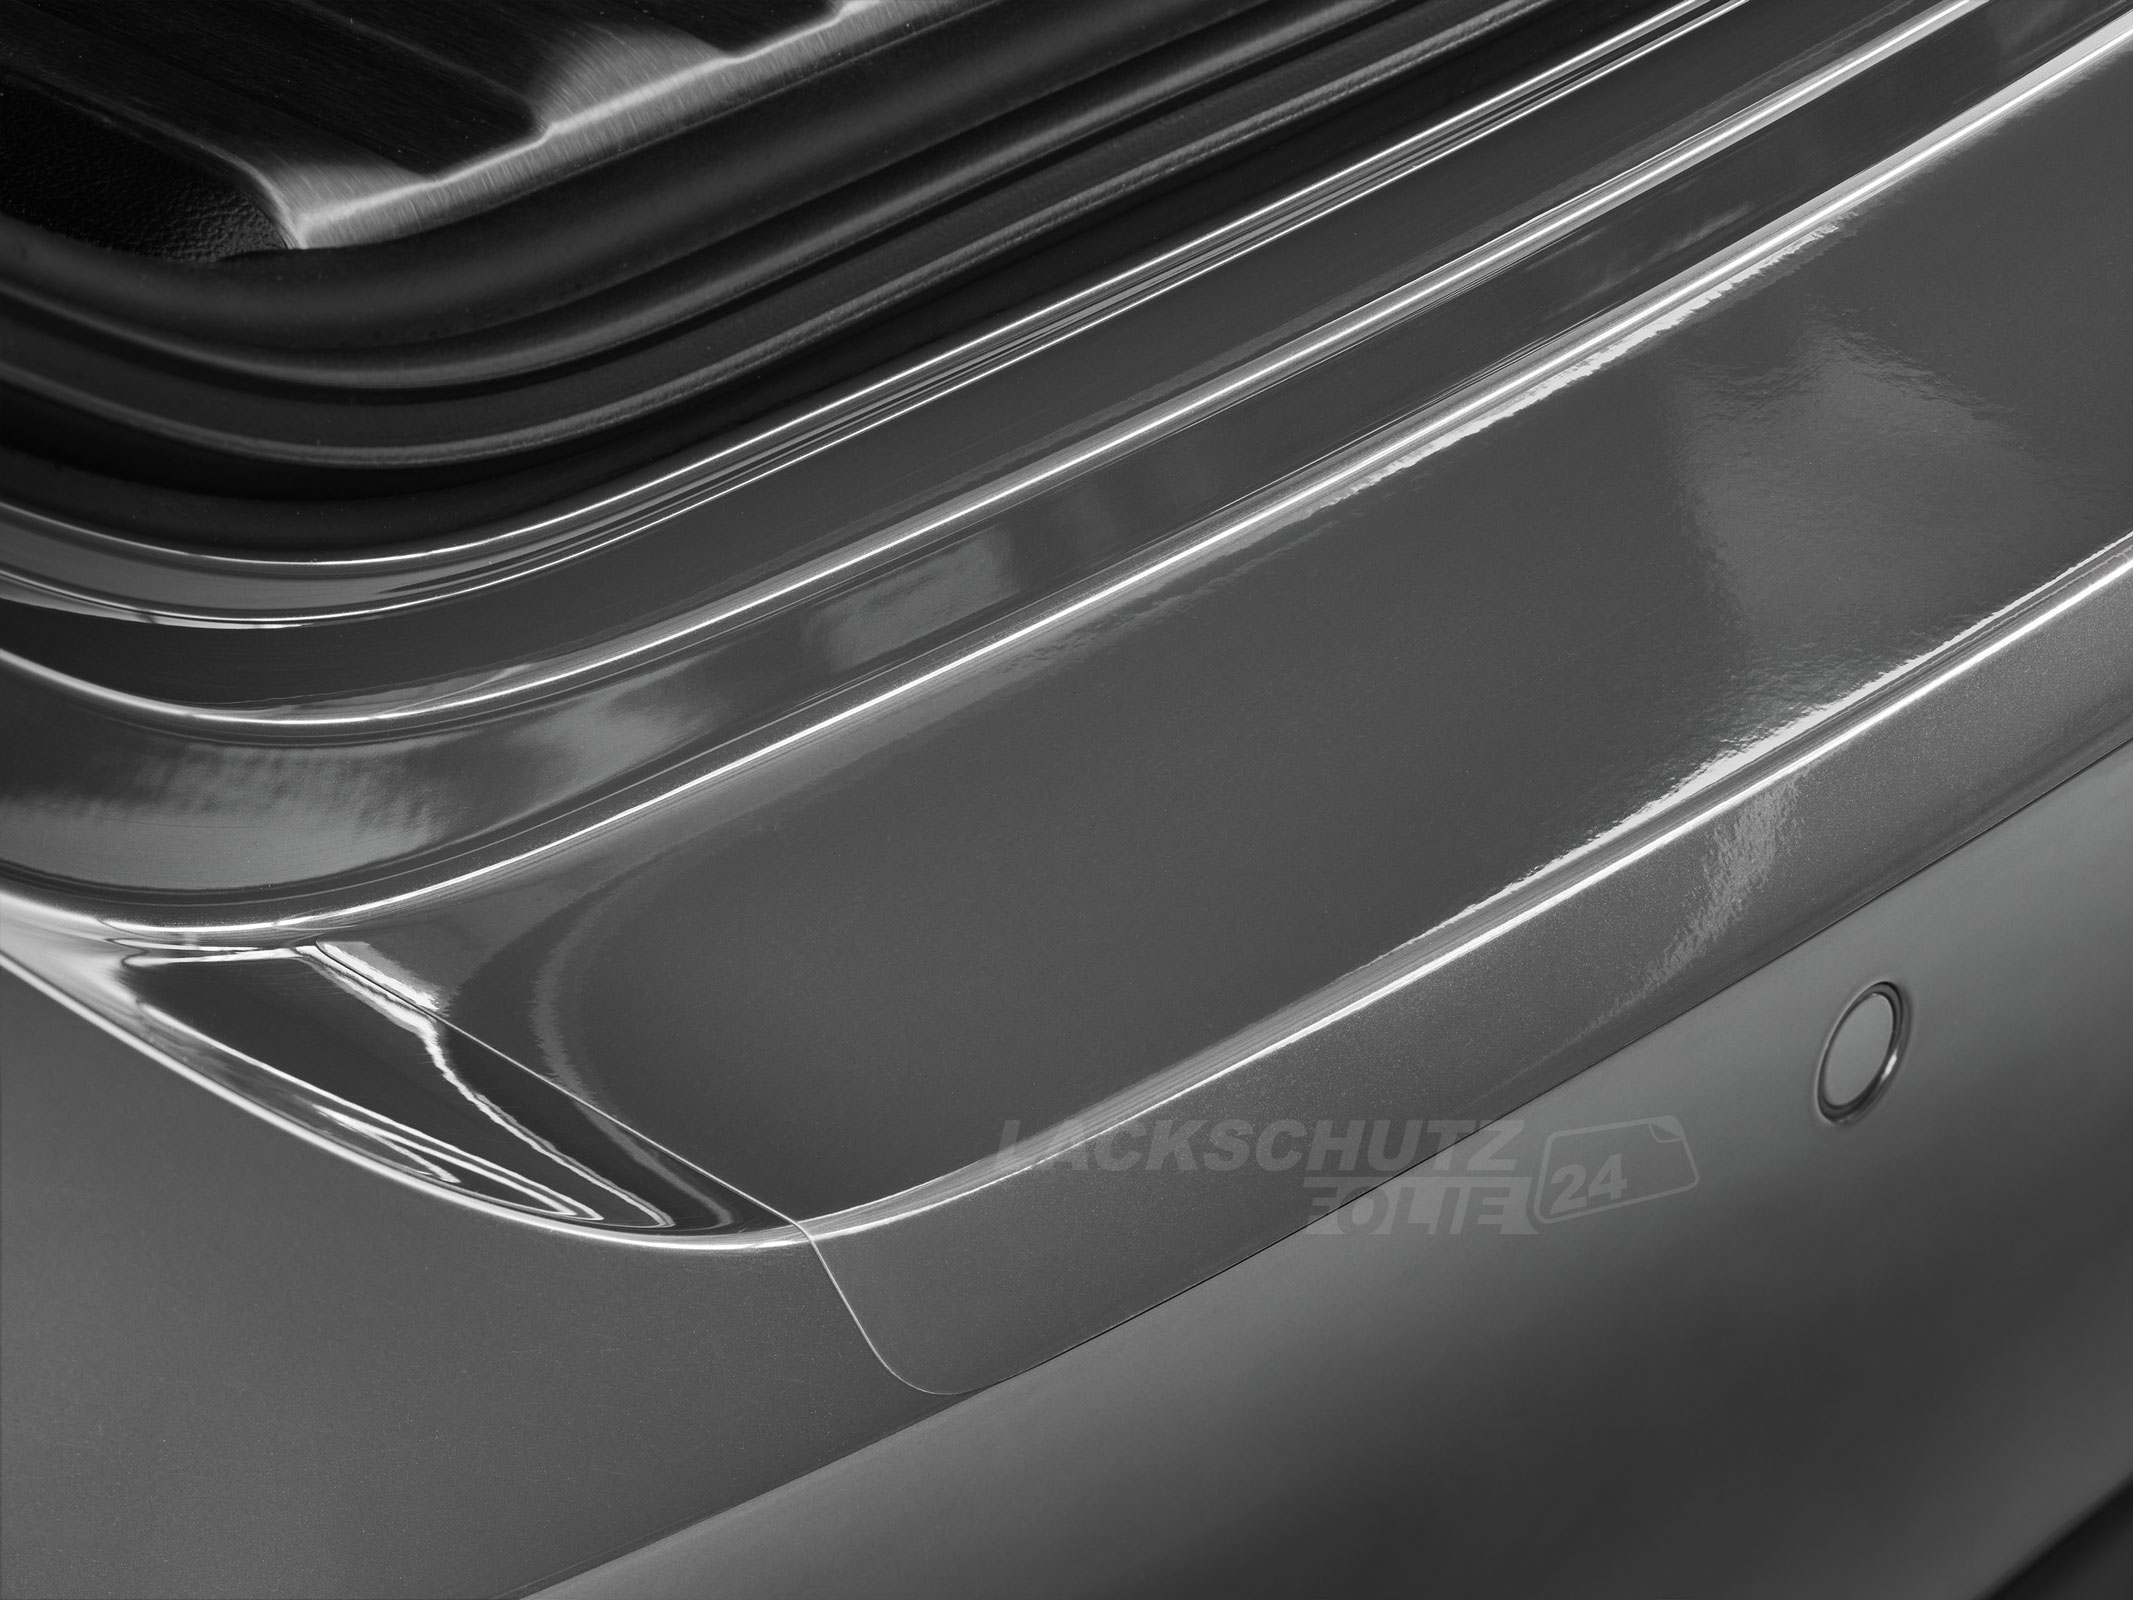 Ladekantenschutzfolie - Transparent Glatt Hochglänzend für VW / Volkswagen EOS Facelift, BJ 01/2011-2015